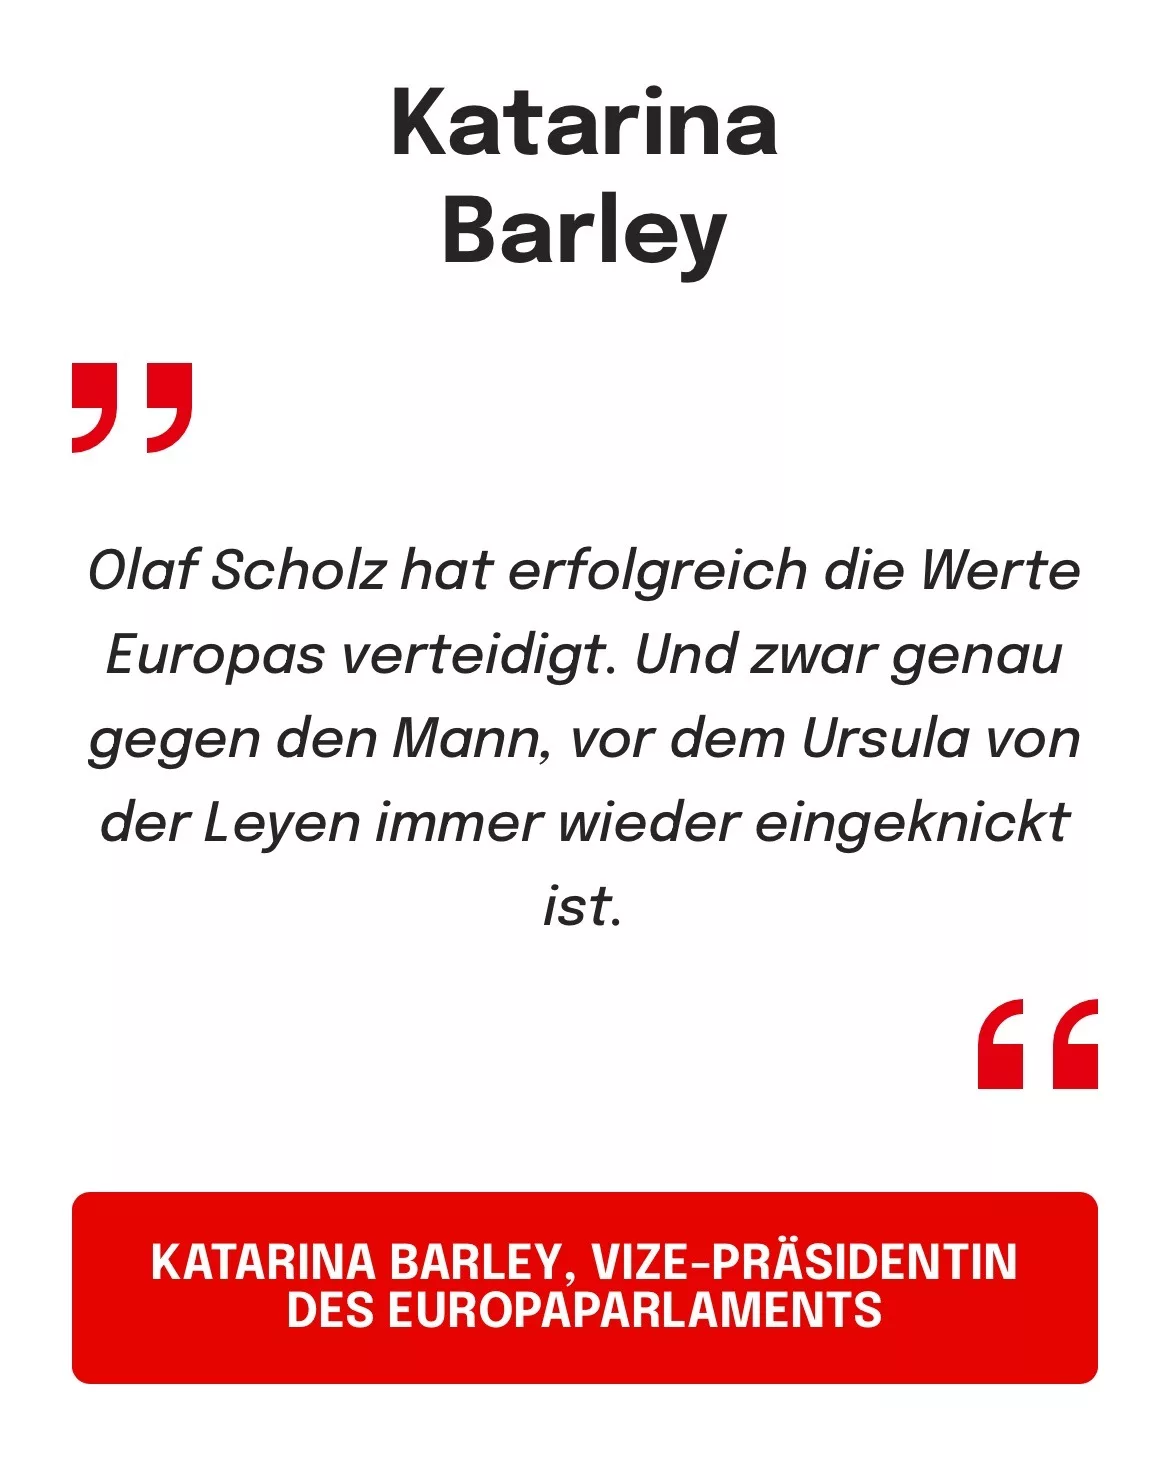 KATARINA BARLEY, VIZE-PRÄSIDENTIN DES EUROPAPARLAMENTS: Olaf Scholz hat erfolgreich die Werte Europas verteidigt. Und zwar genau gegen den Mann, vor dem Ursula von der Leyen immer wieder eingeknickt ist.